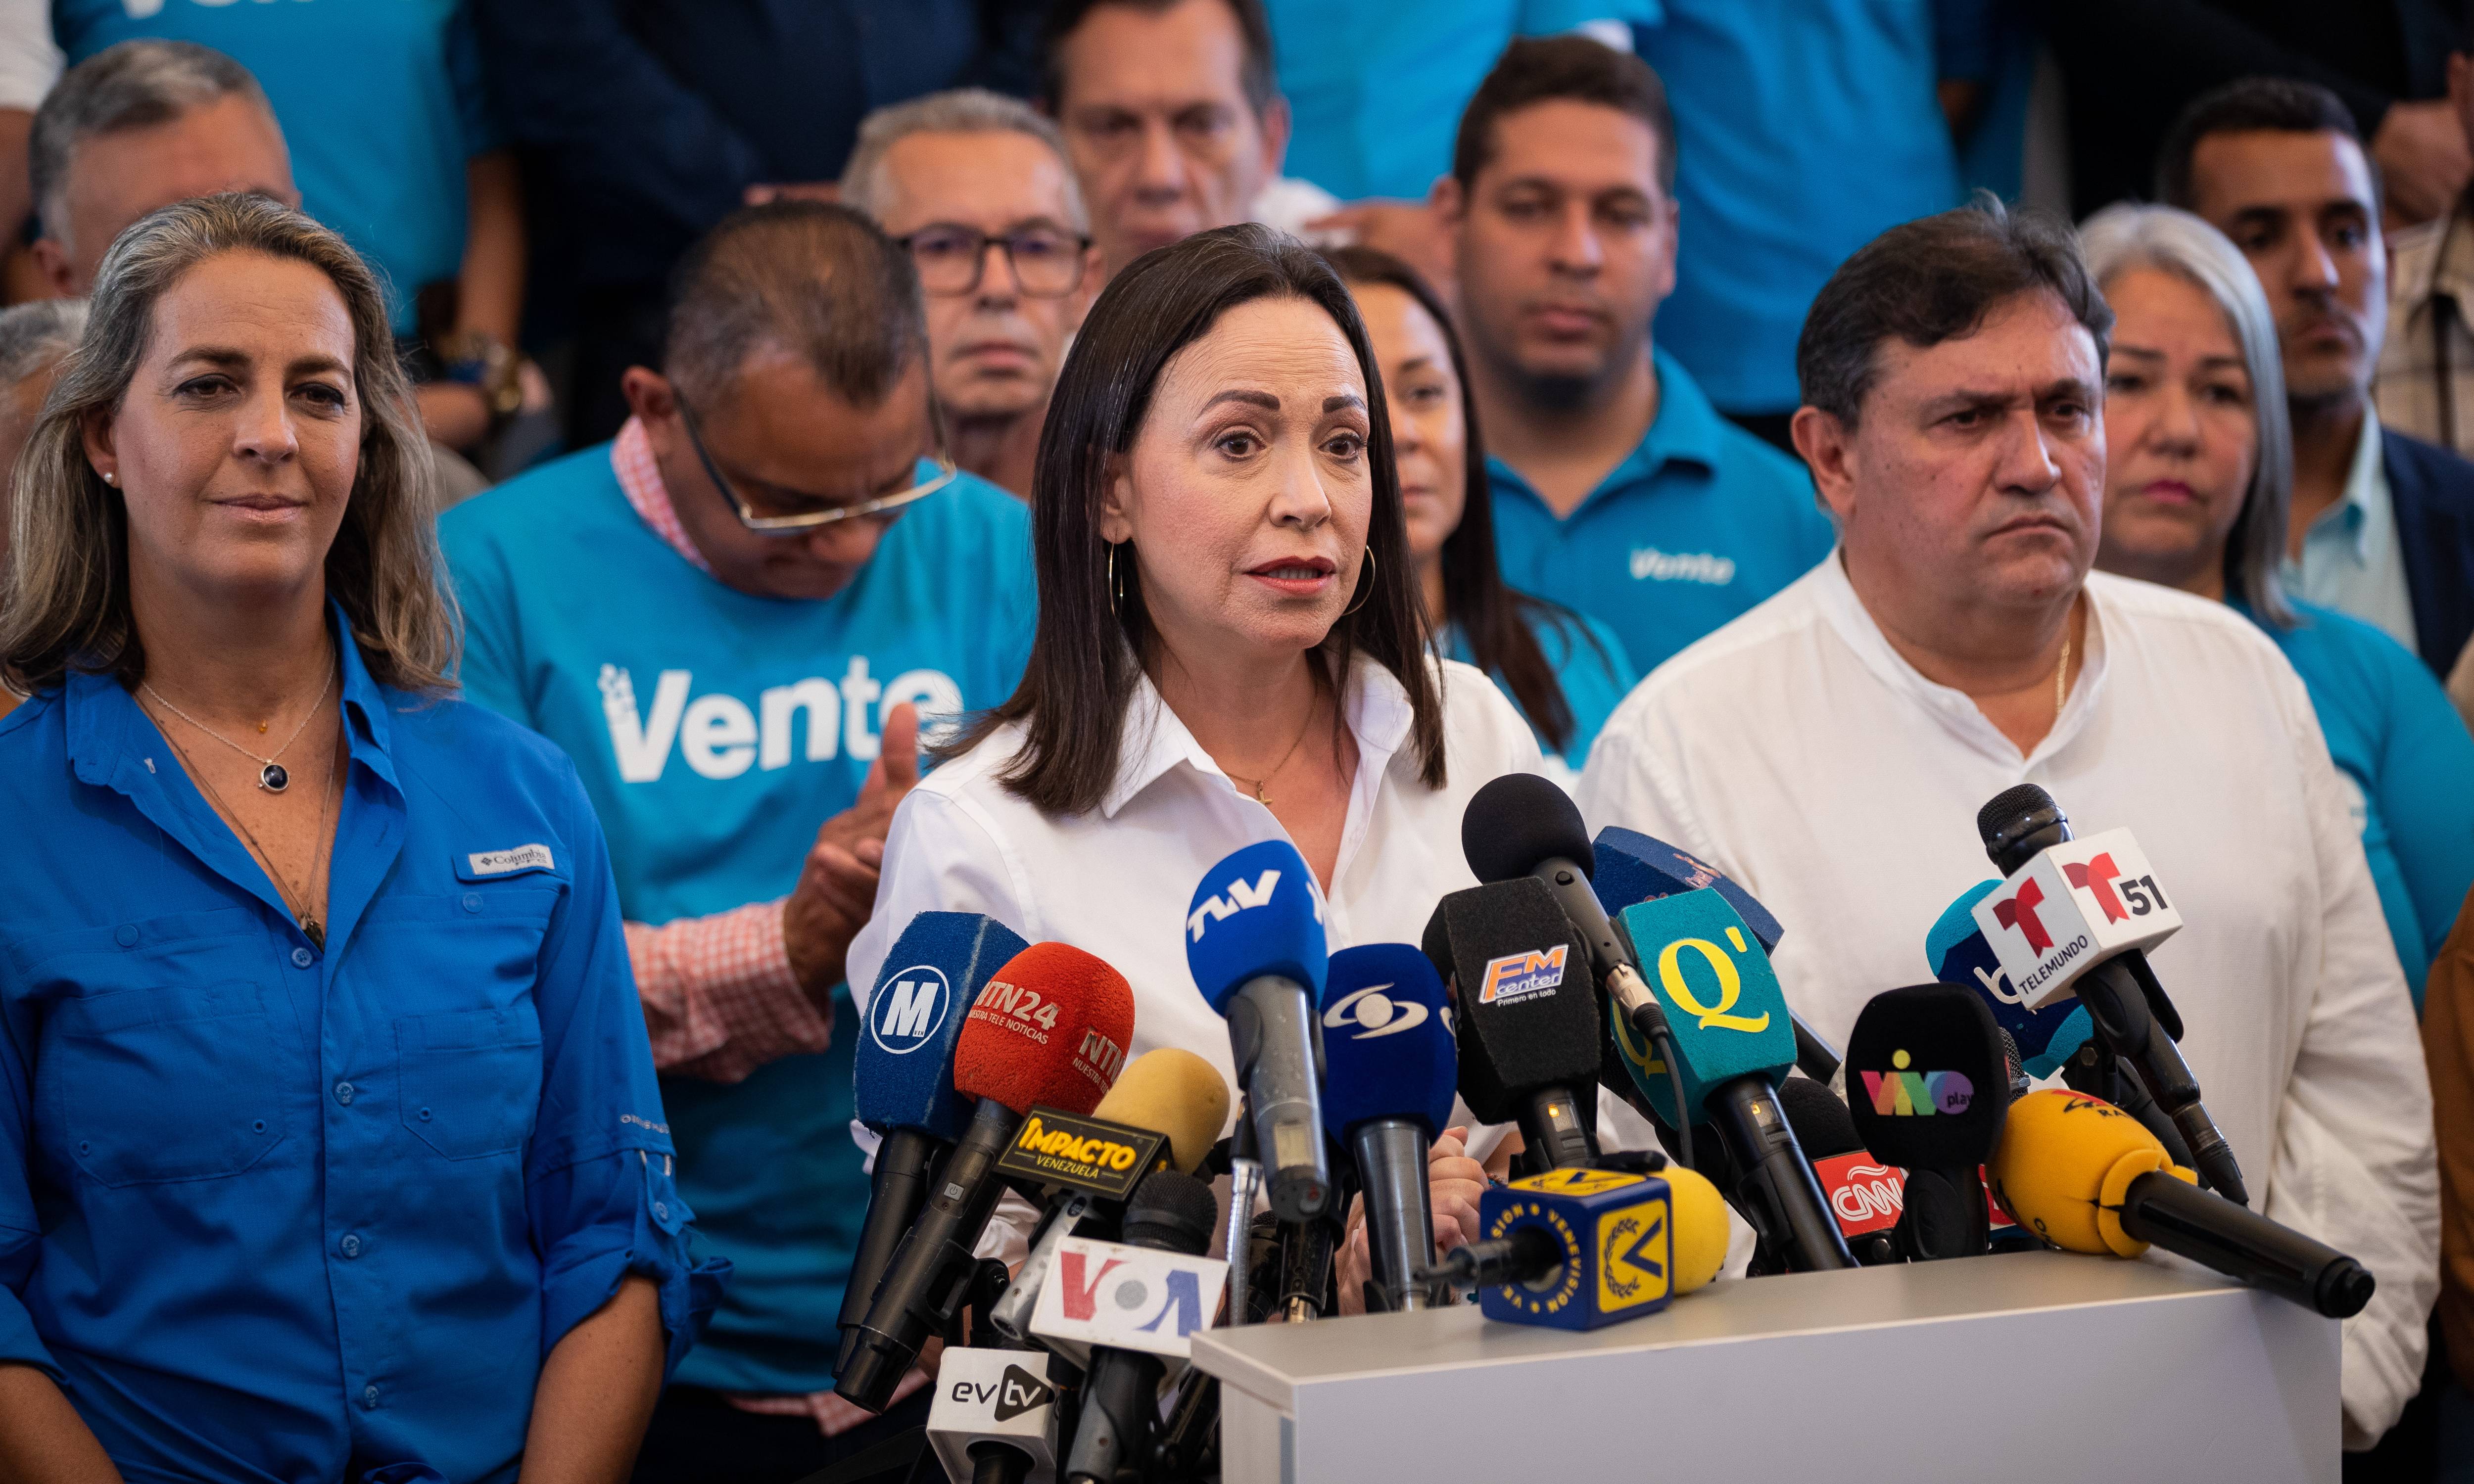 Vente Venezuela condenó la detención arbitraria de Rocío San Miguel